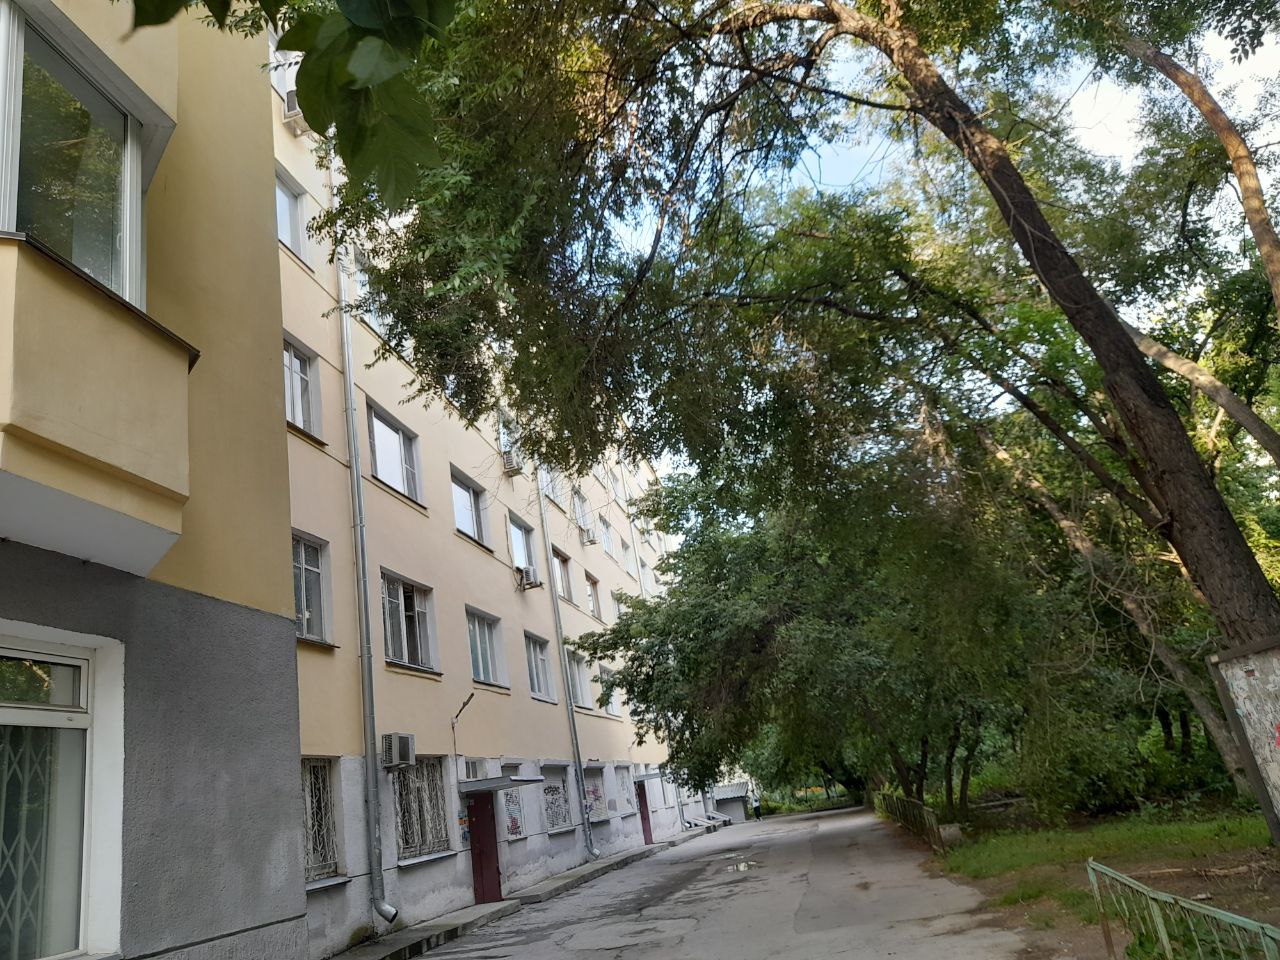 Жители дома на Серебренниковской отвоевали у «вооружённых» автогеном неизвестных людей детскую площадку в собственном дворе